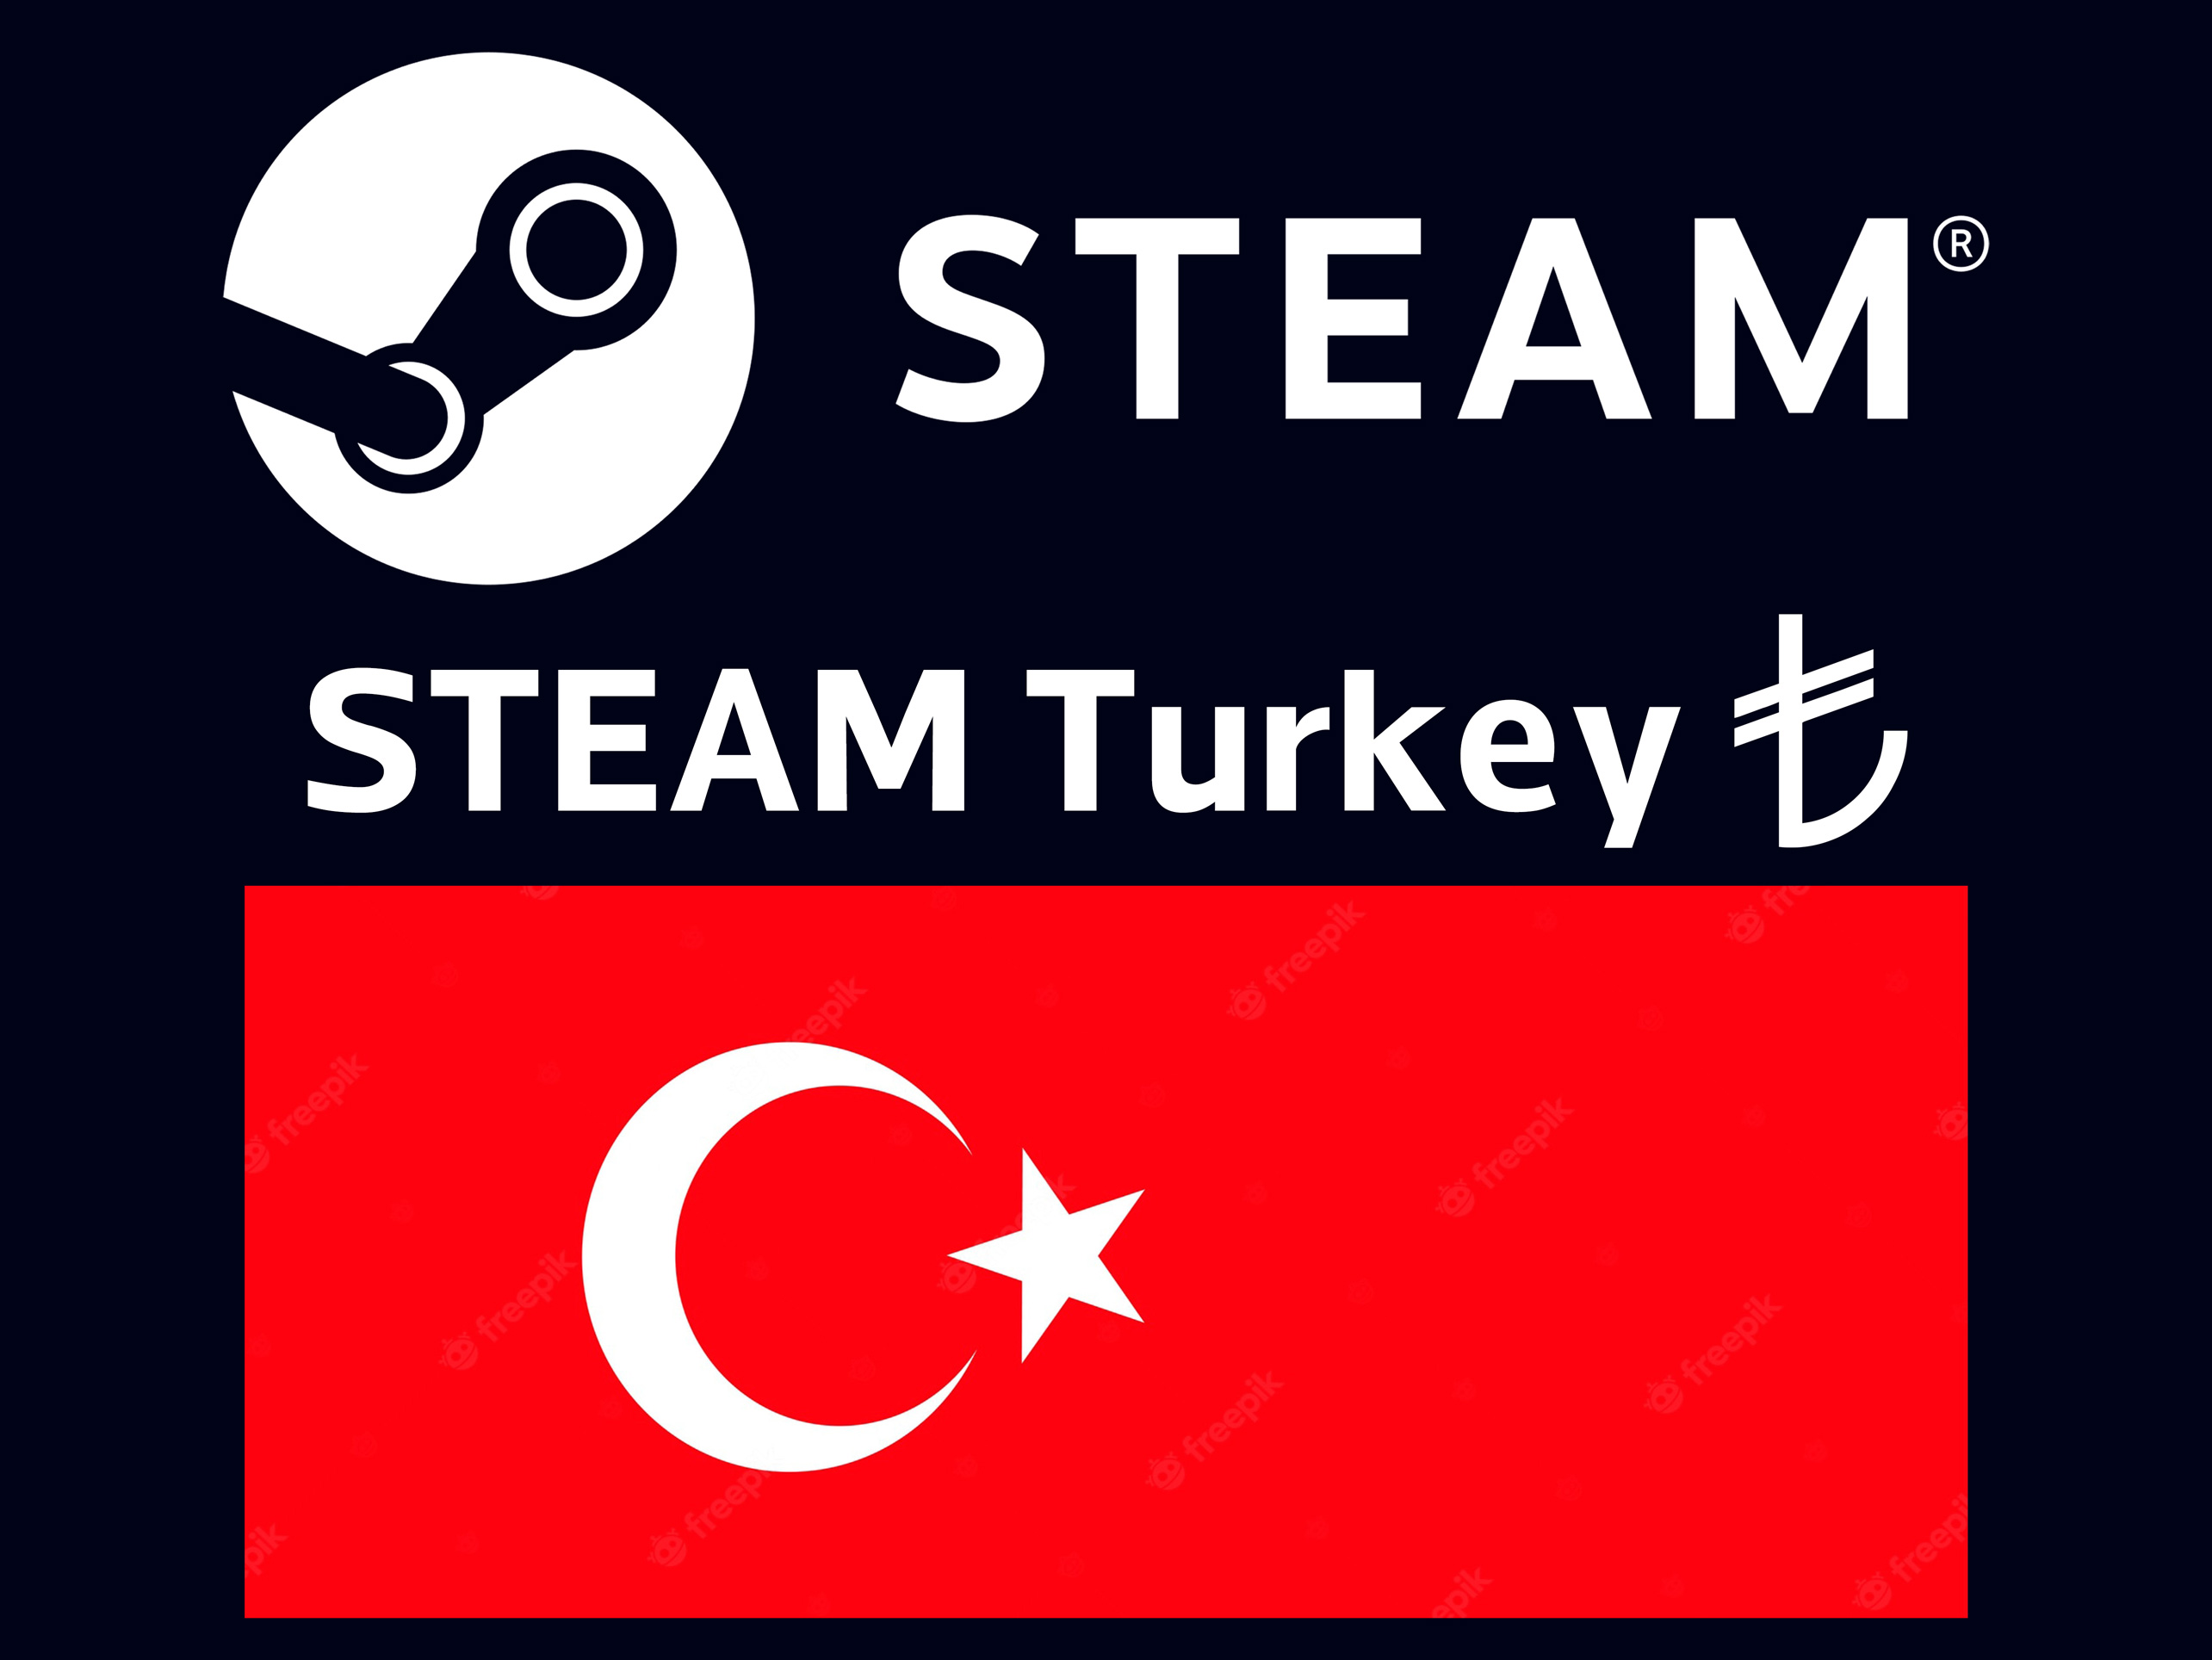 Steam turkey prices фото 85